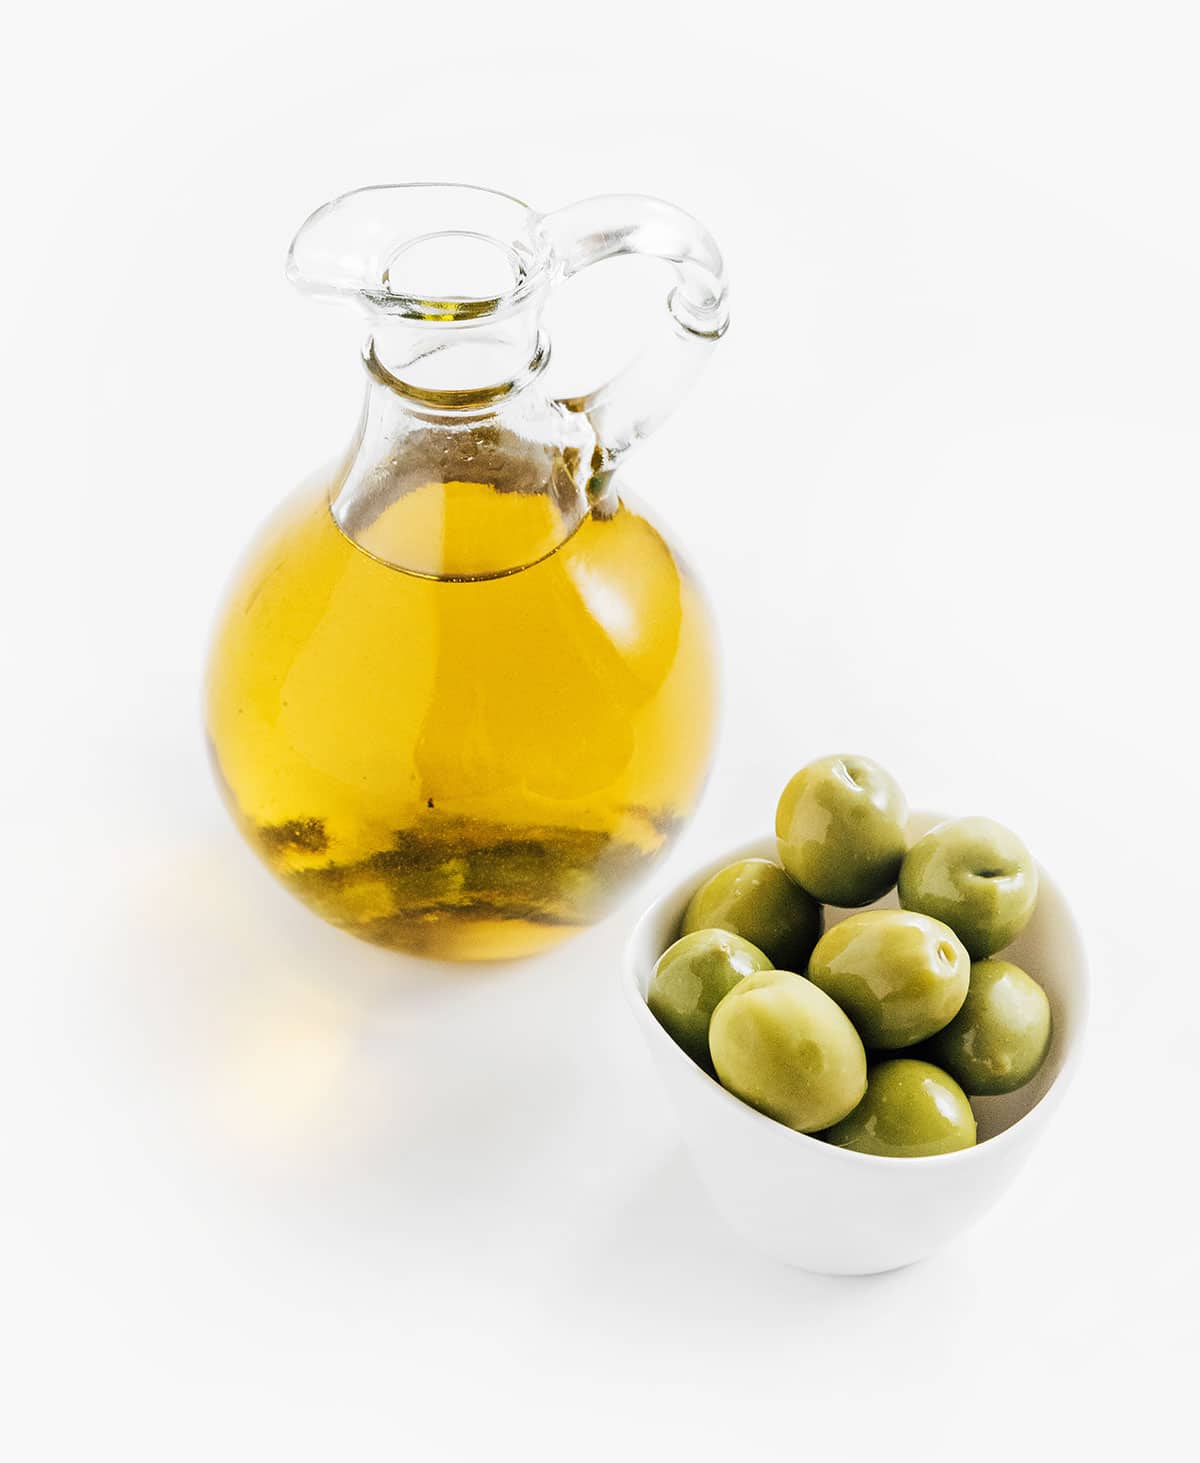 Jar of olives with a jar of olive oil